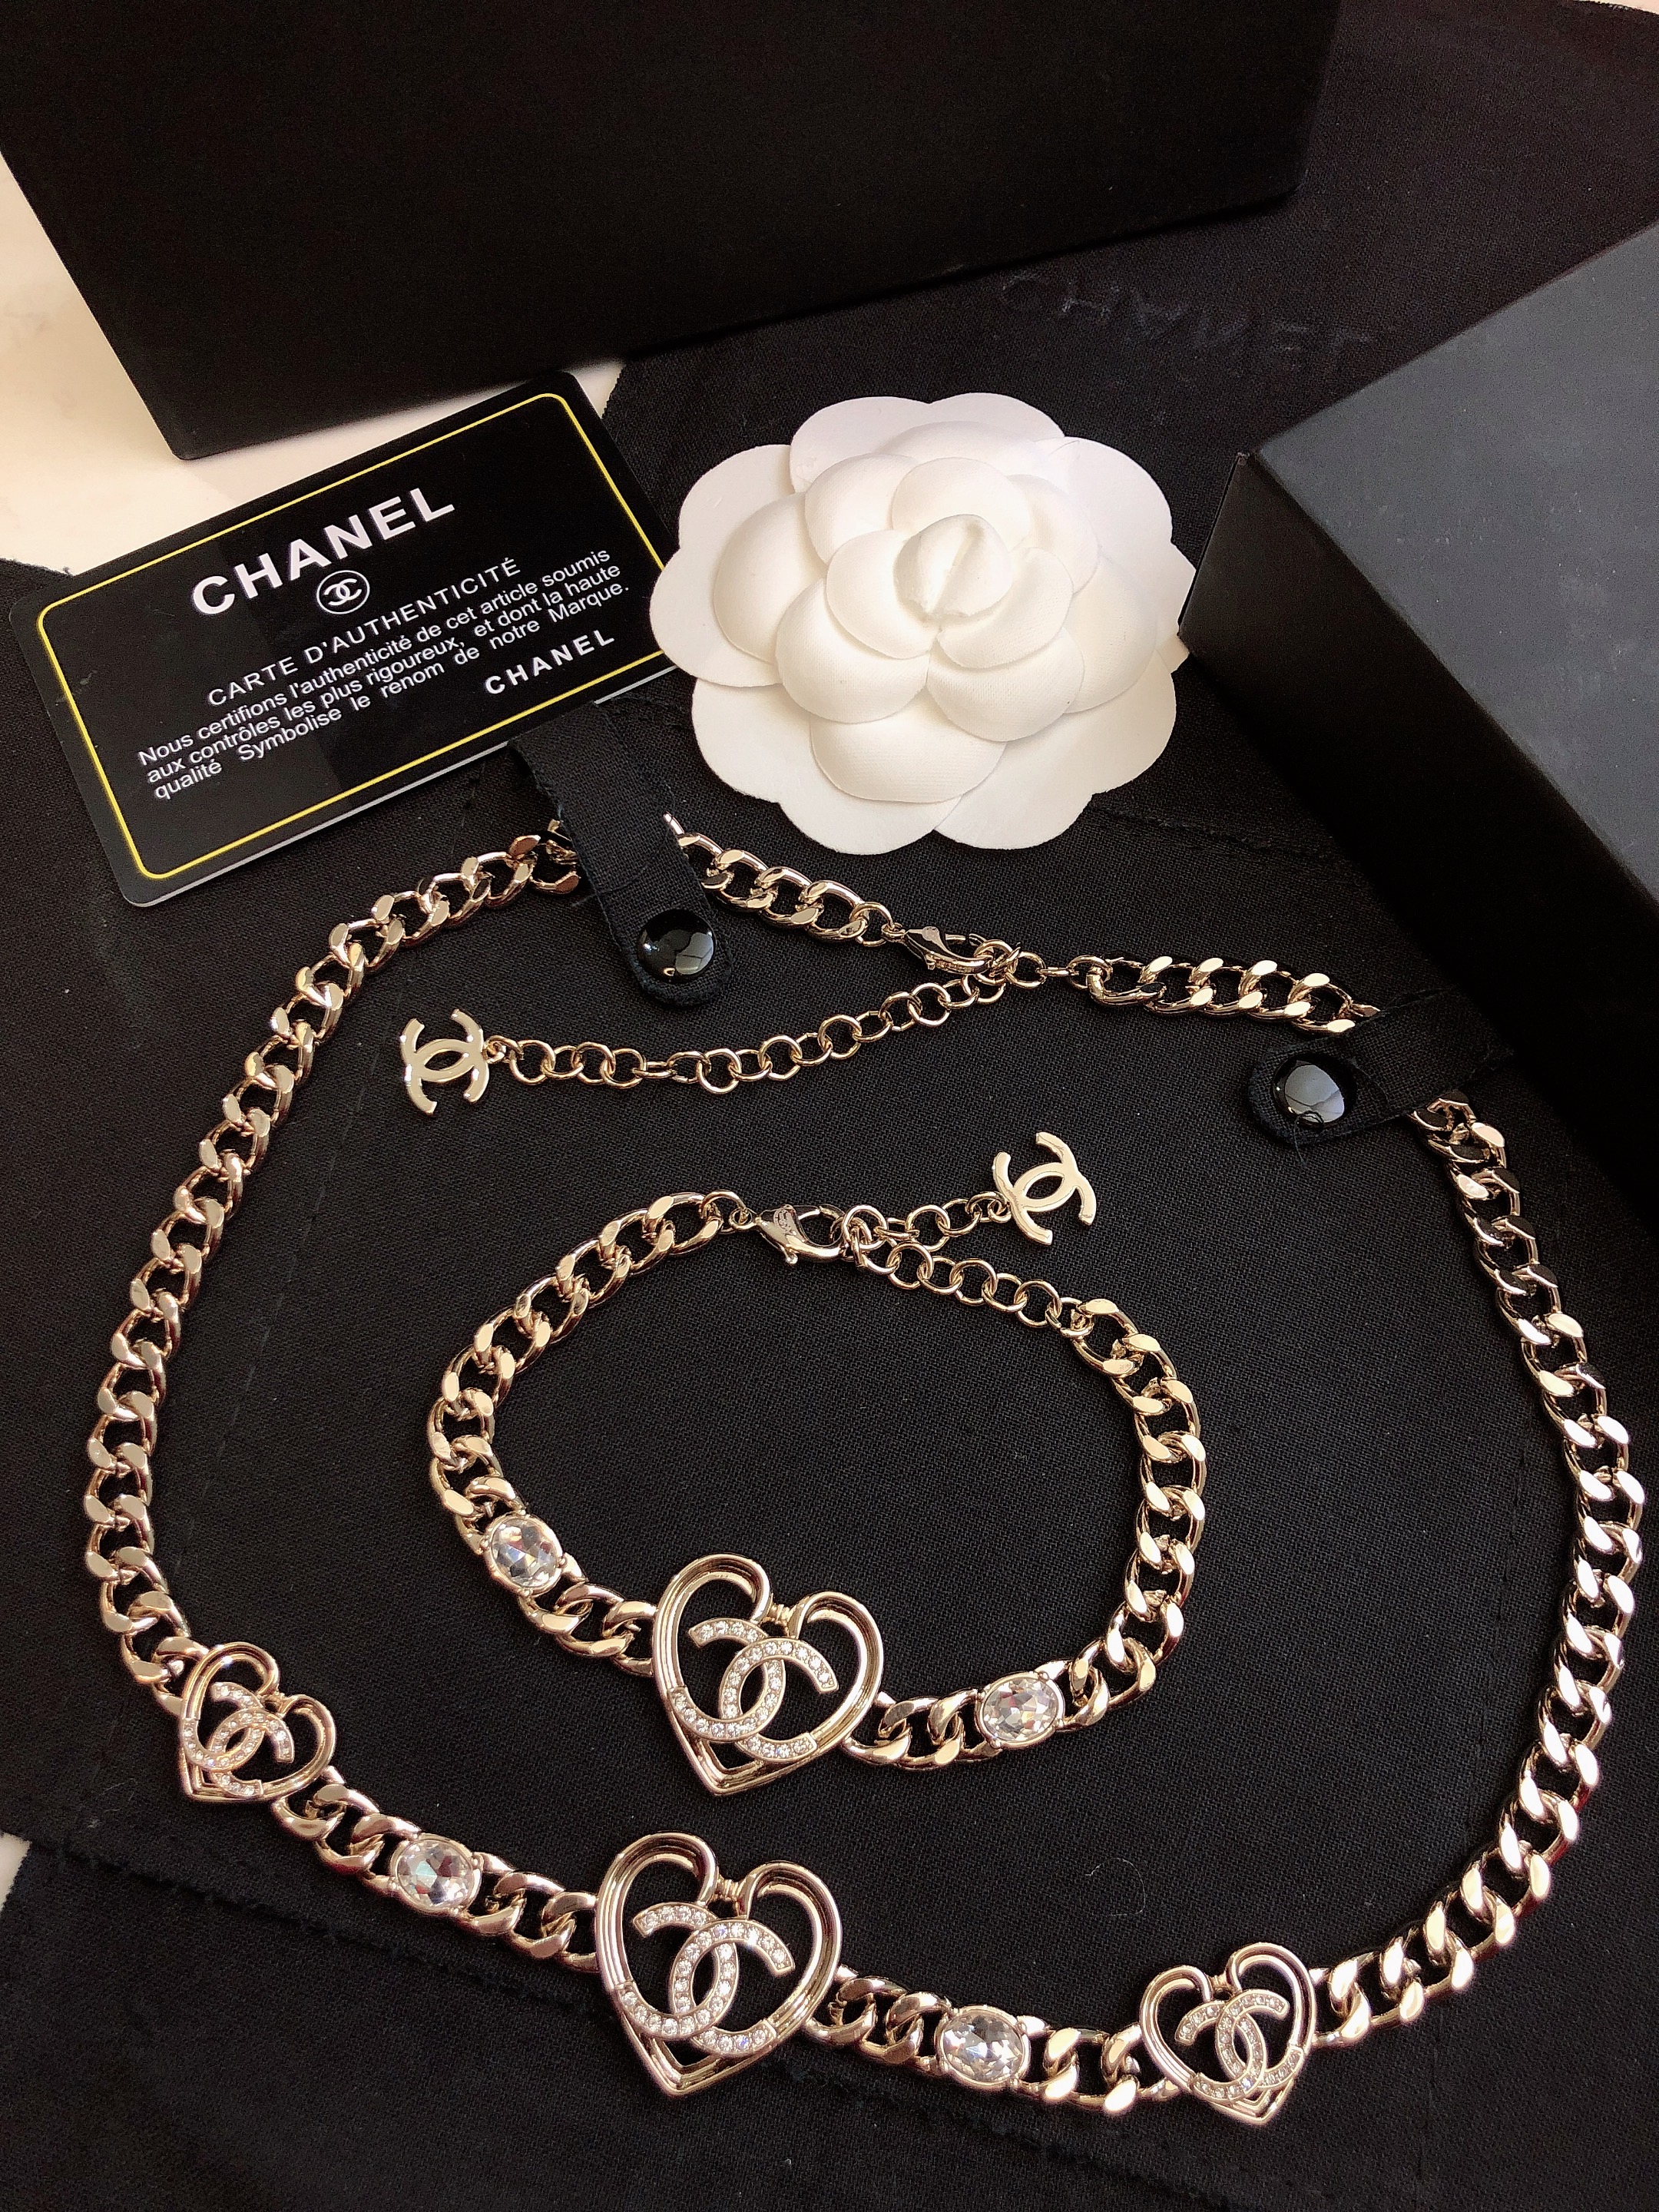 Chanel Jewelry Bracelet Necklaces & Pendants Sale Outlet Online